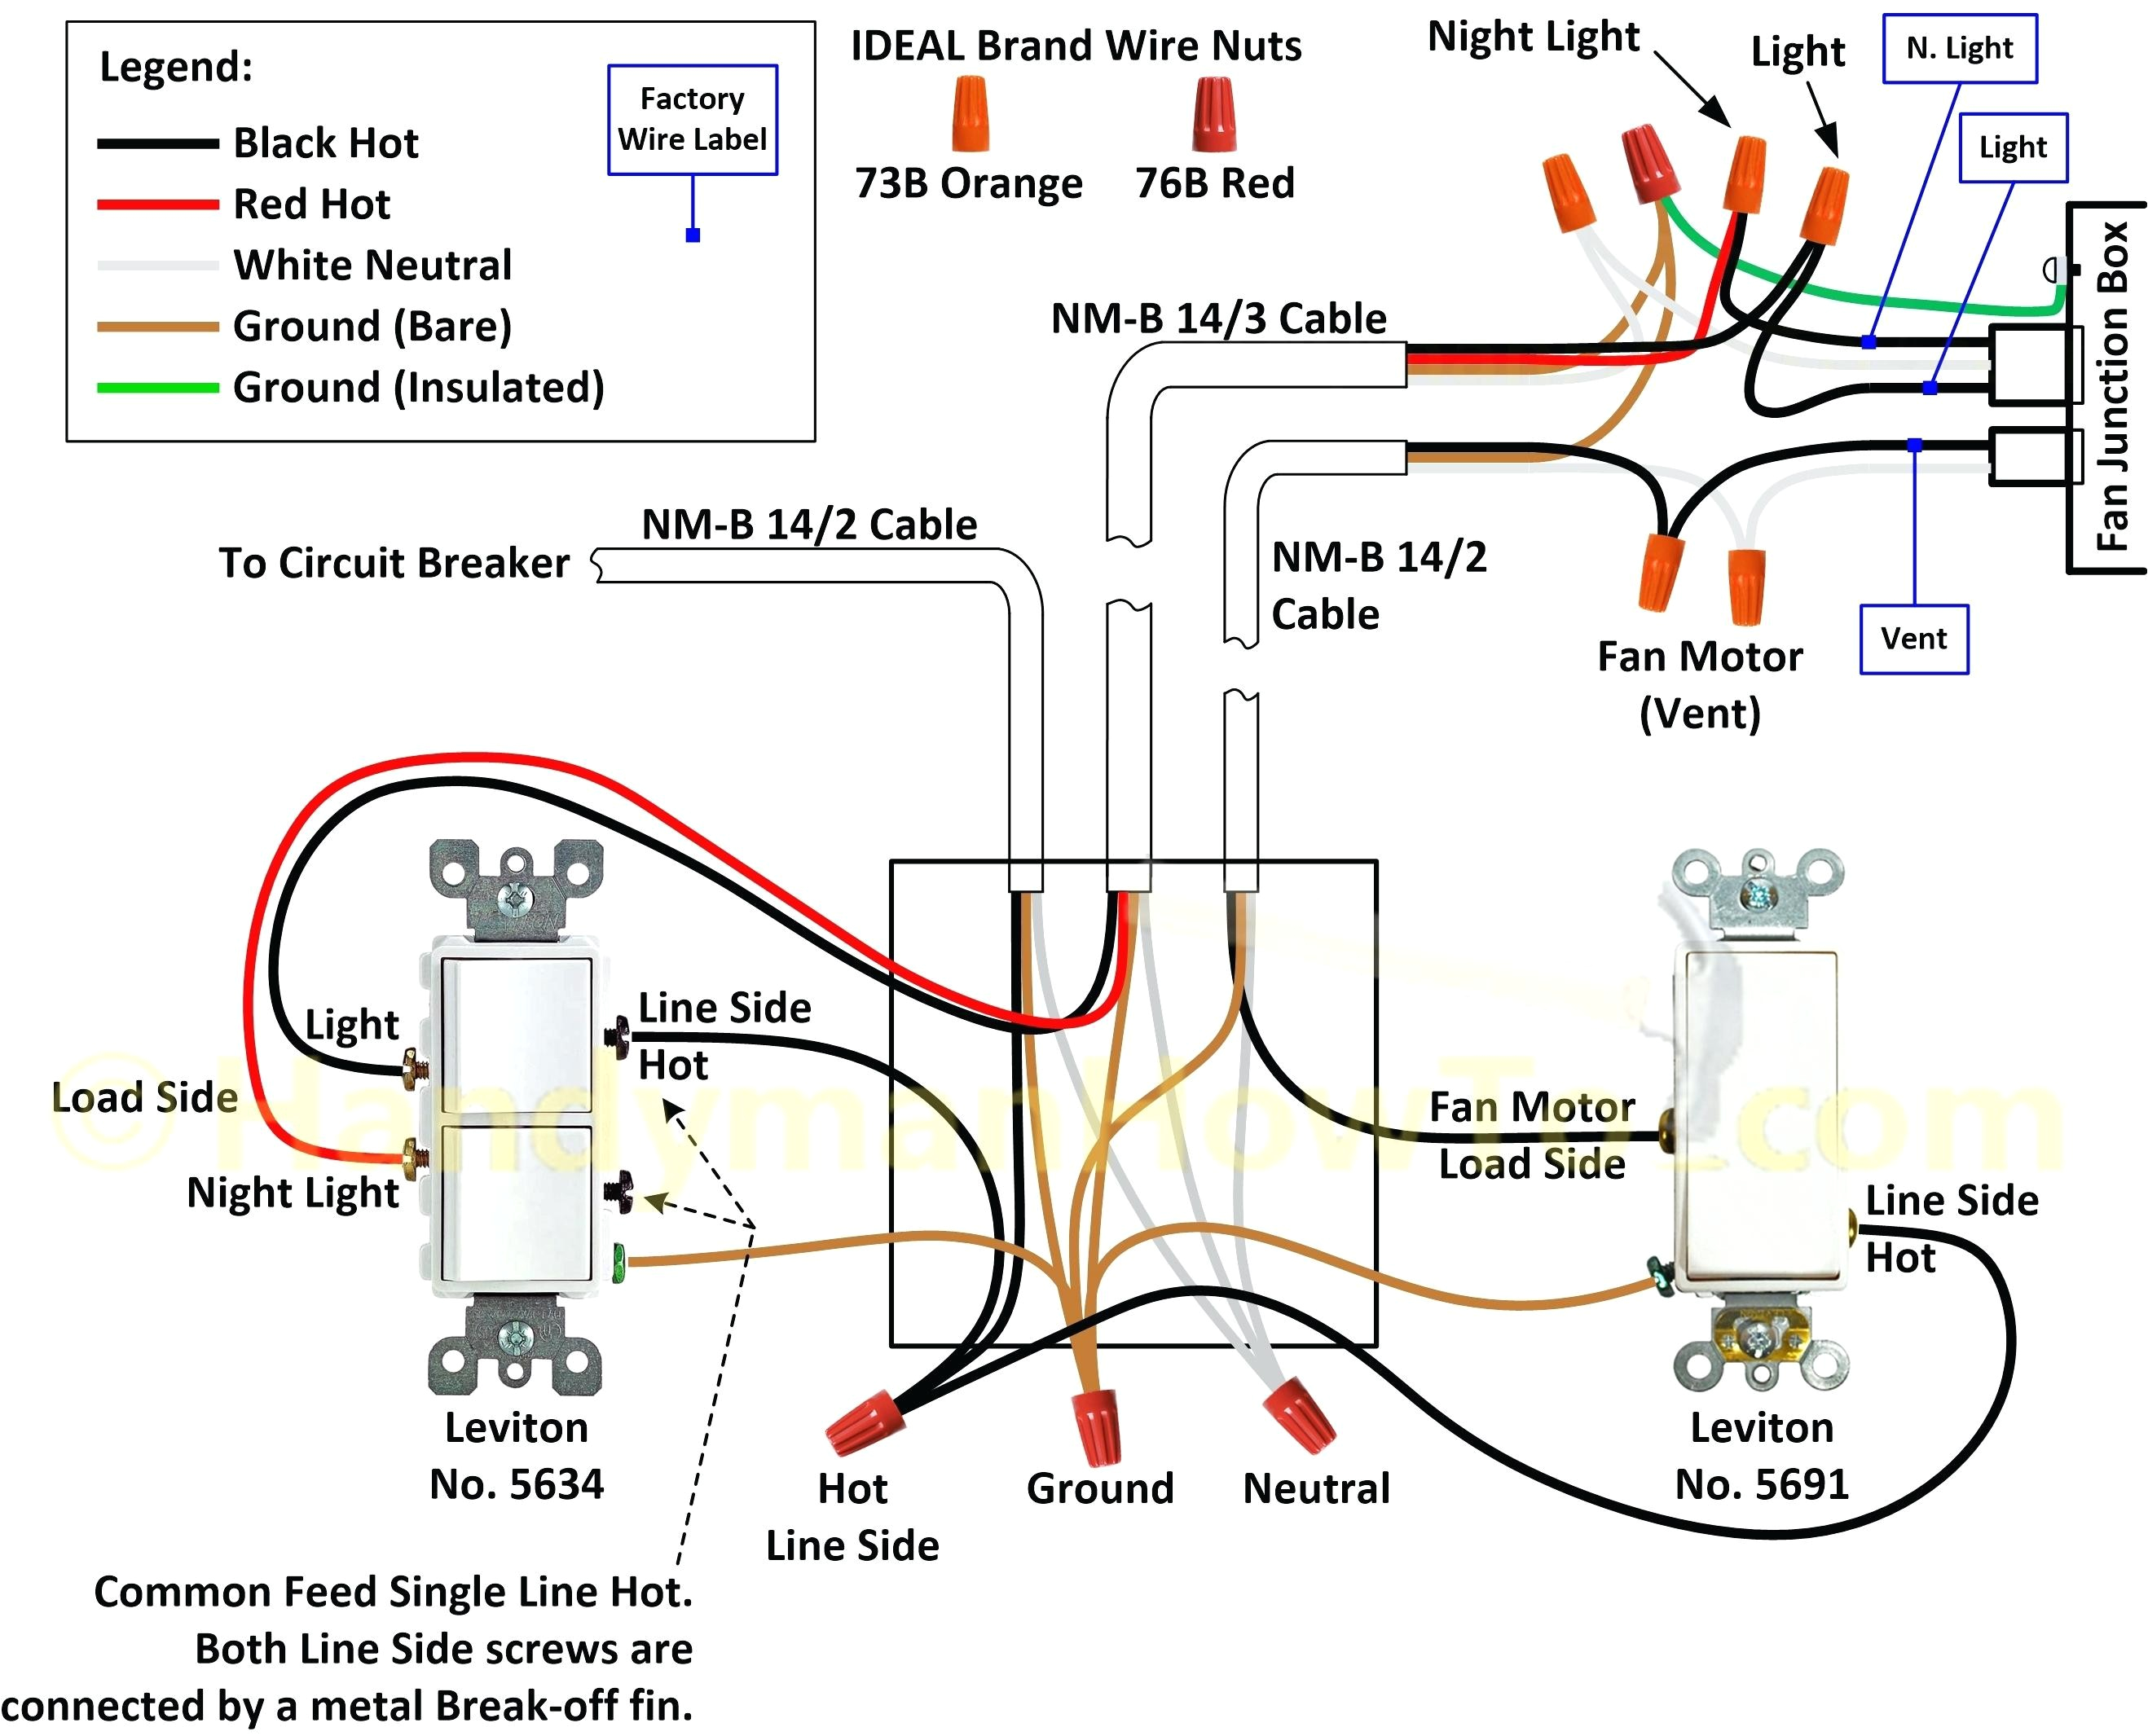 wiring an schematic box wiring diagram data val wiring a schematic box 3